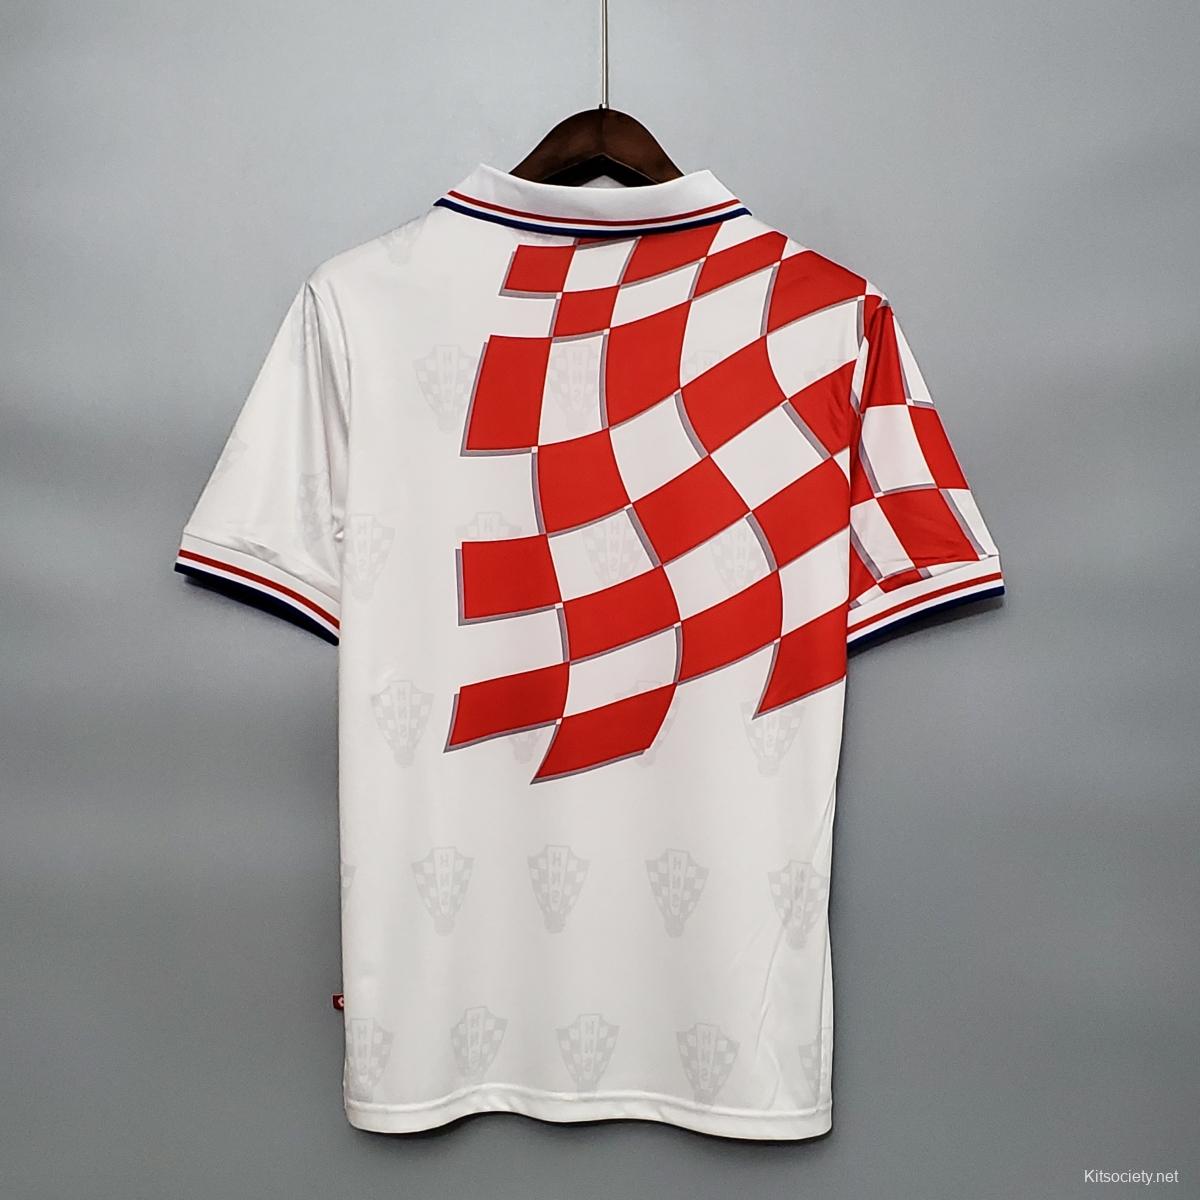 Retro Croatia soccer jerseys